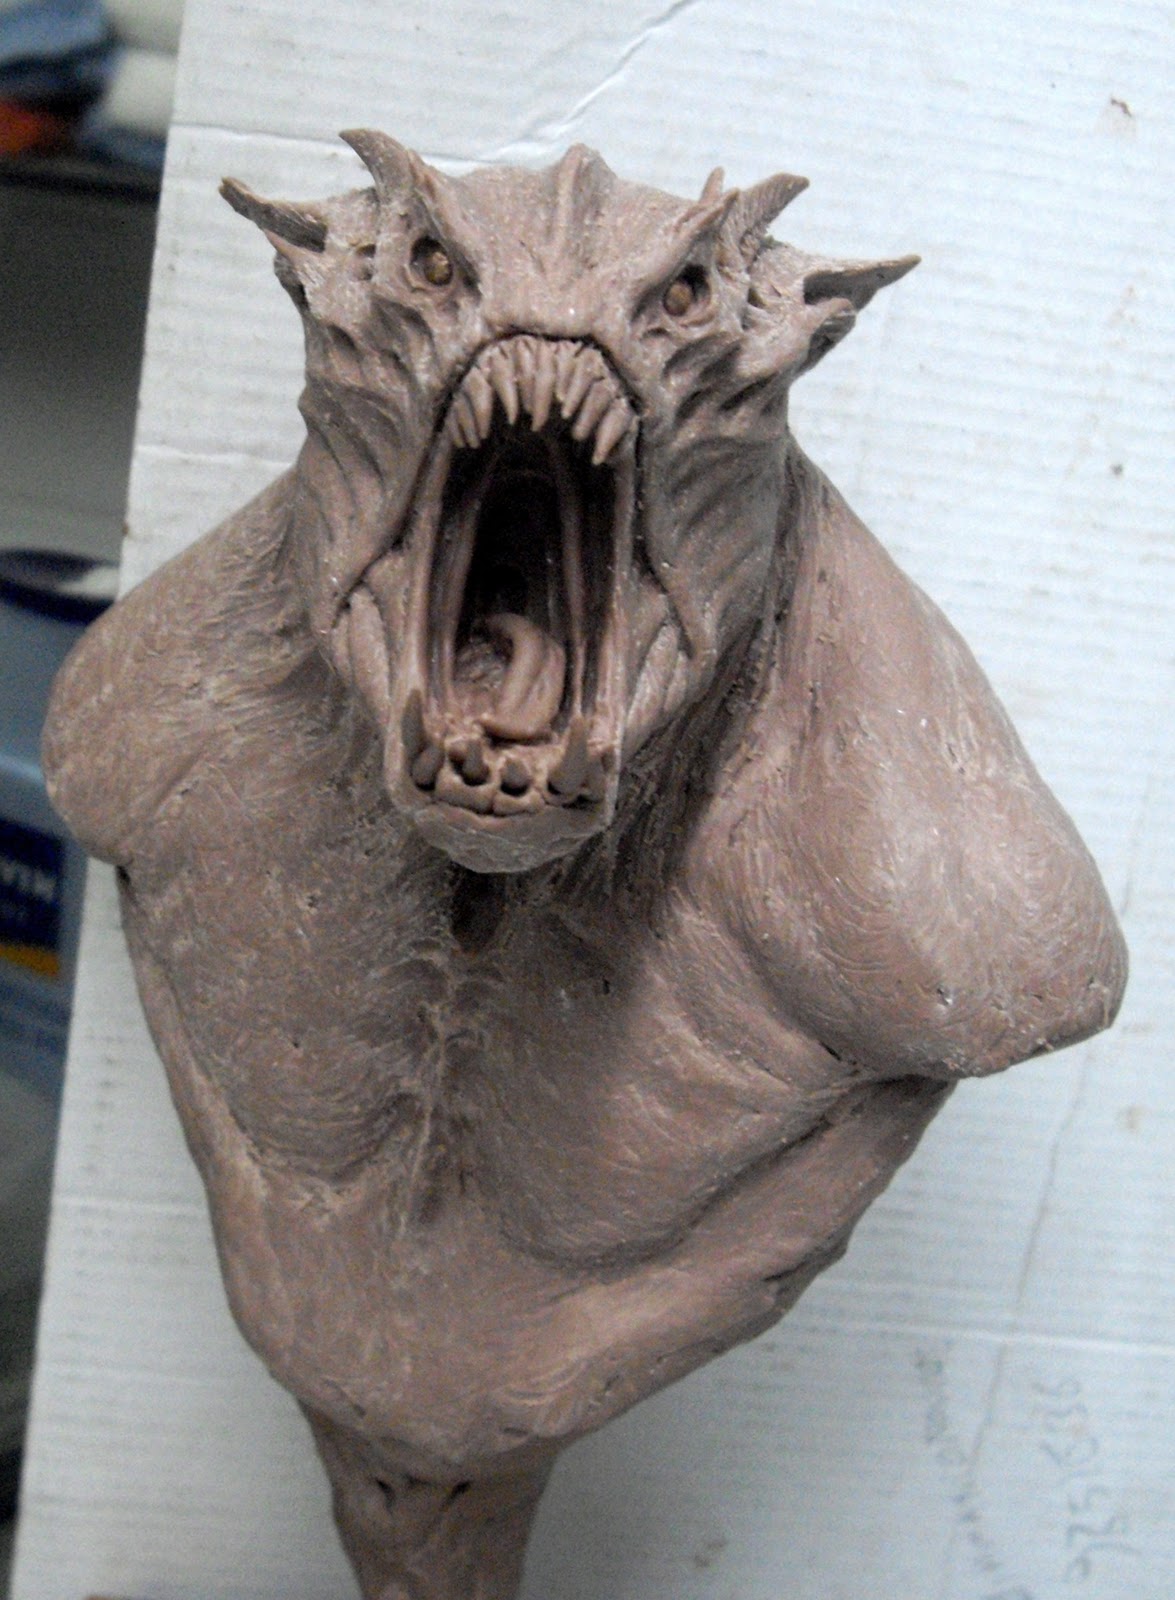 Aris Kolokontes art.: Monster clay monster.#2 WIP.